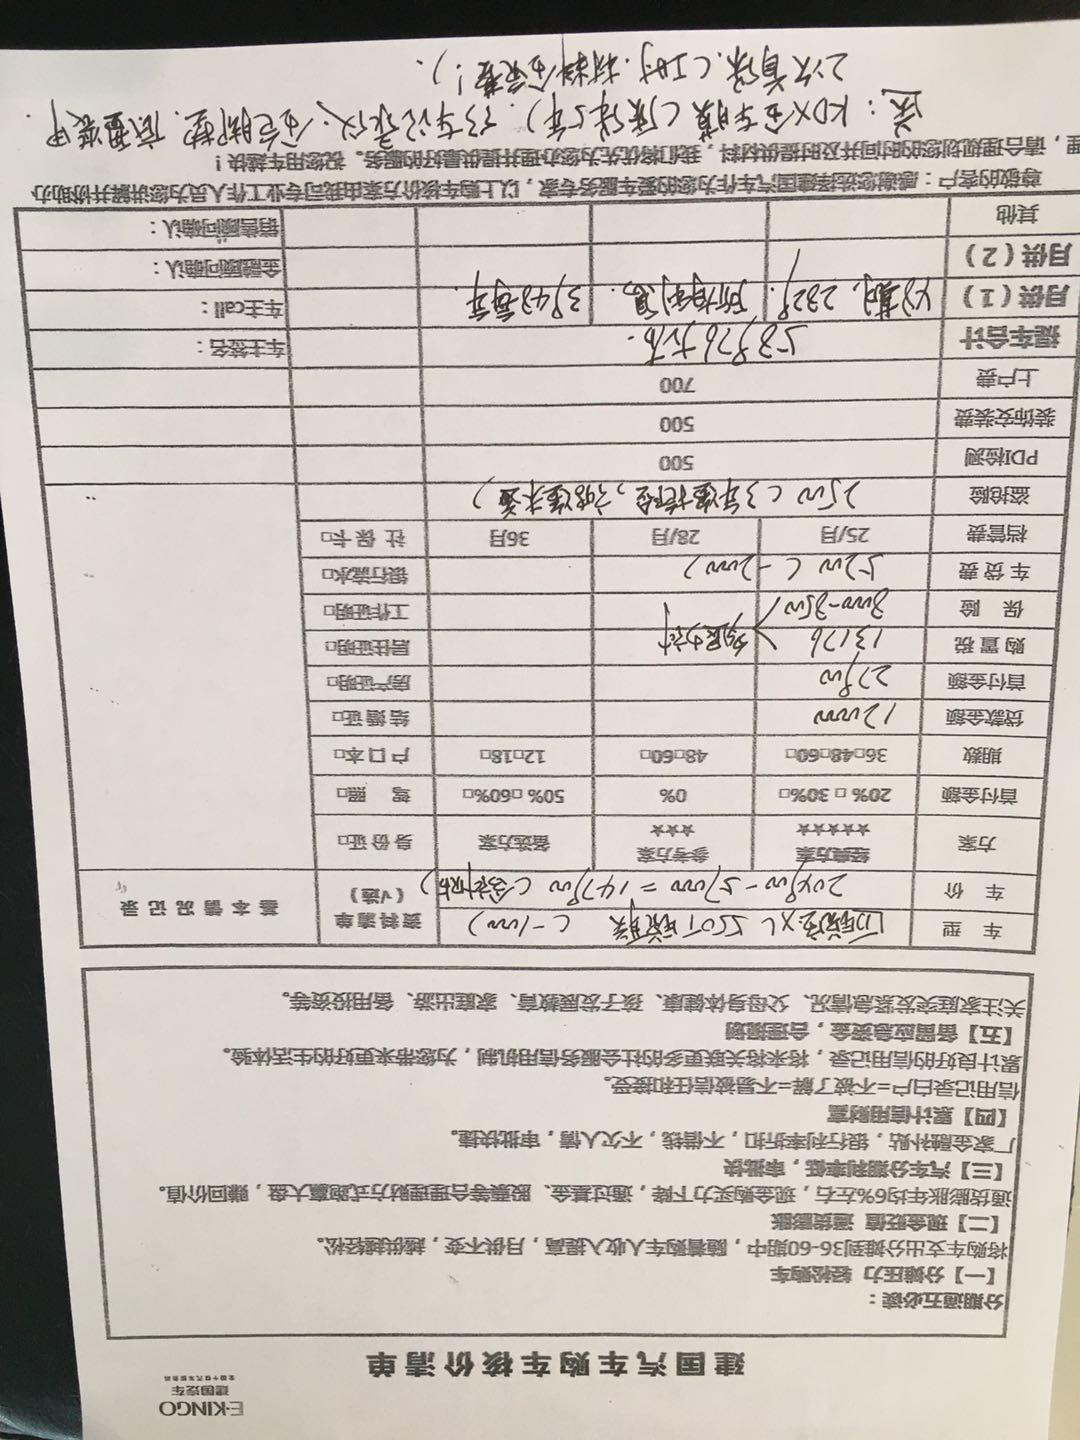 雪佛兰迈锐宝XL 自贡地区算上质换 裸车价14.79贵吗？